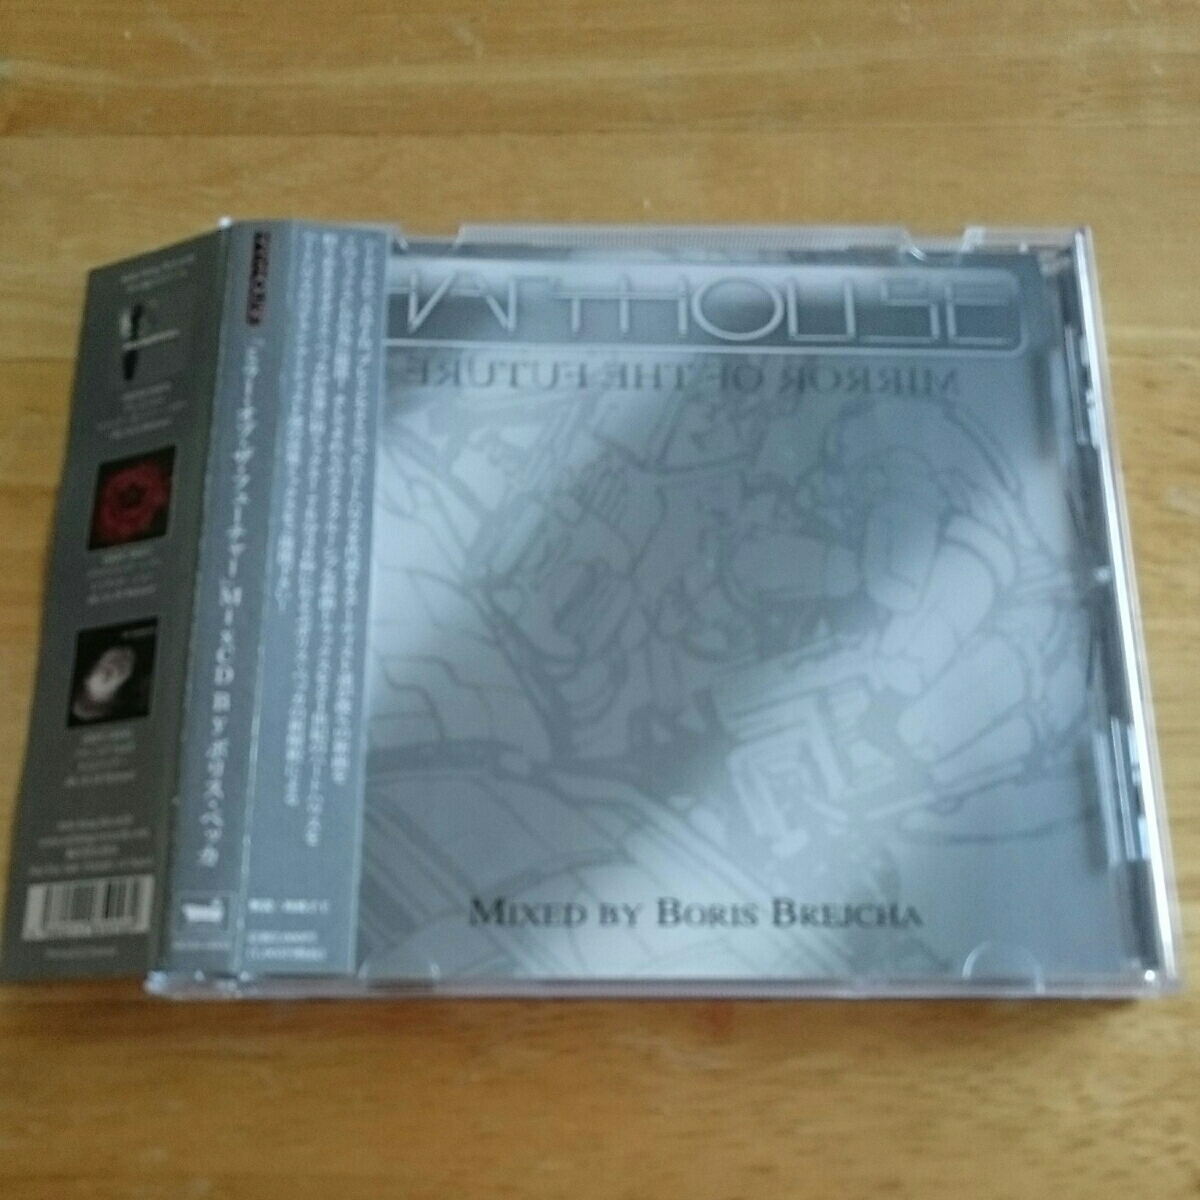 【送料込!『ミラー・オブ・ザ・フューチャー』Mix CD by ボリス・ベッカ 帯付き 】_画像1